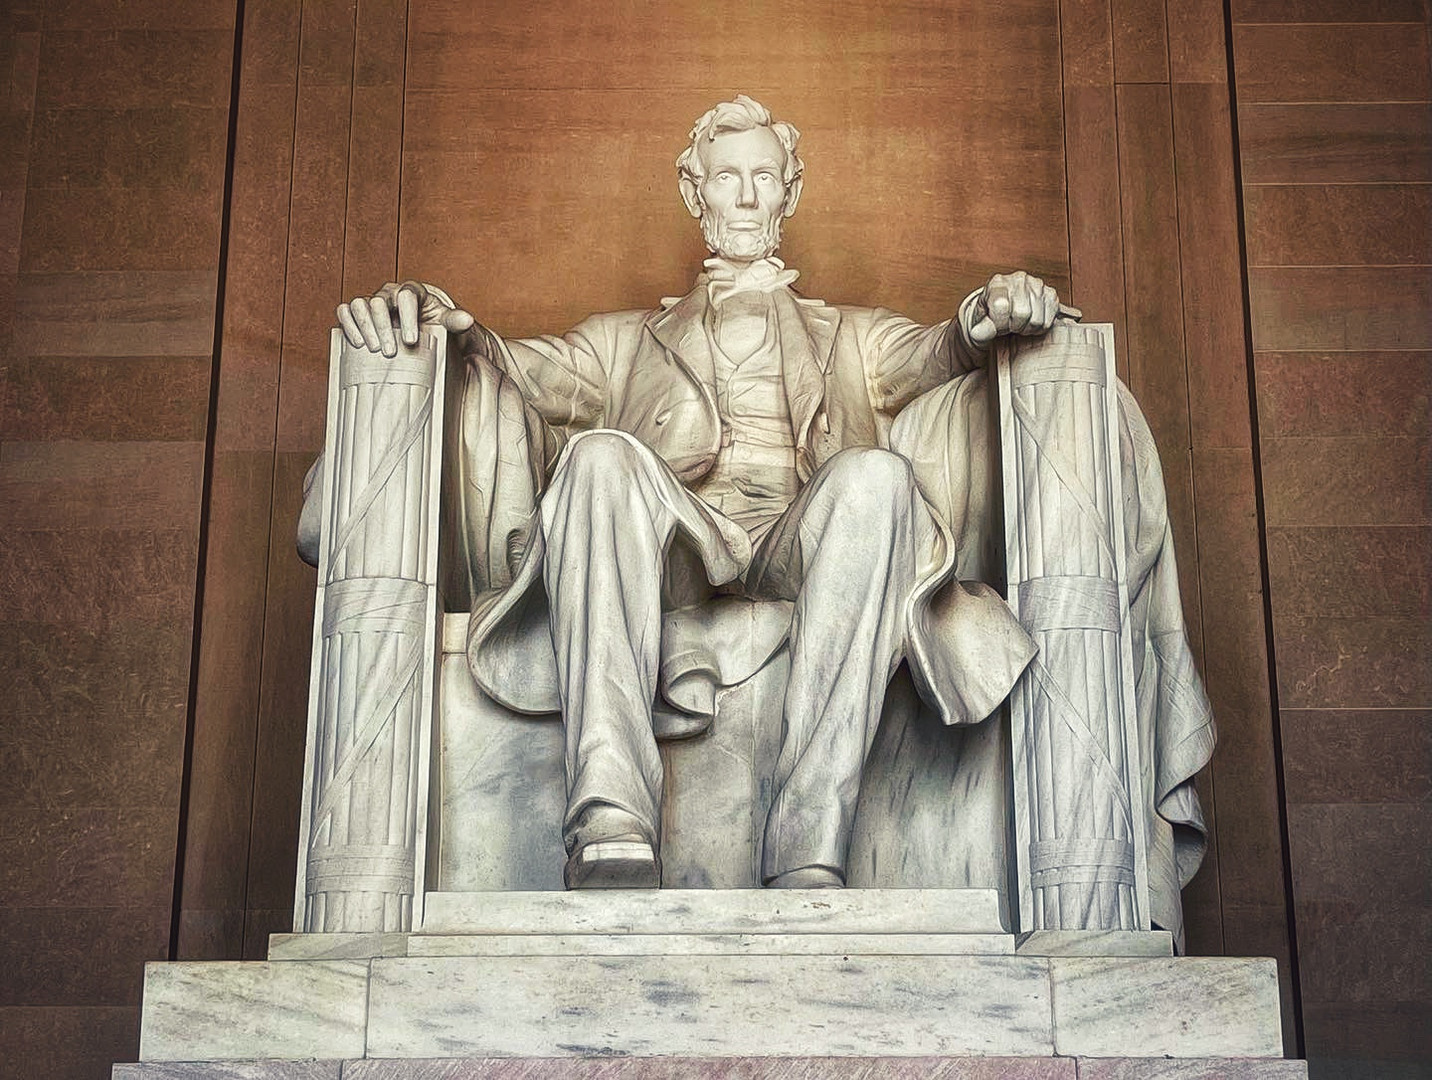 Lincoln Memorial Washington DC 